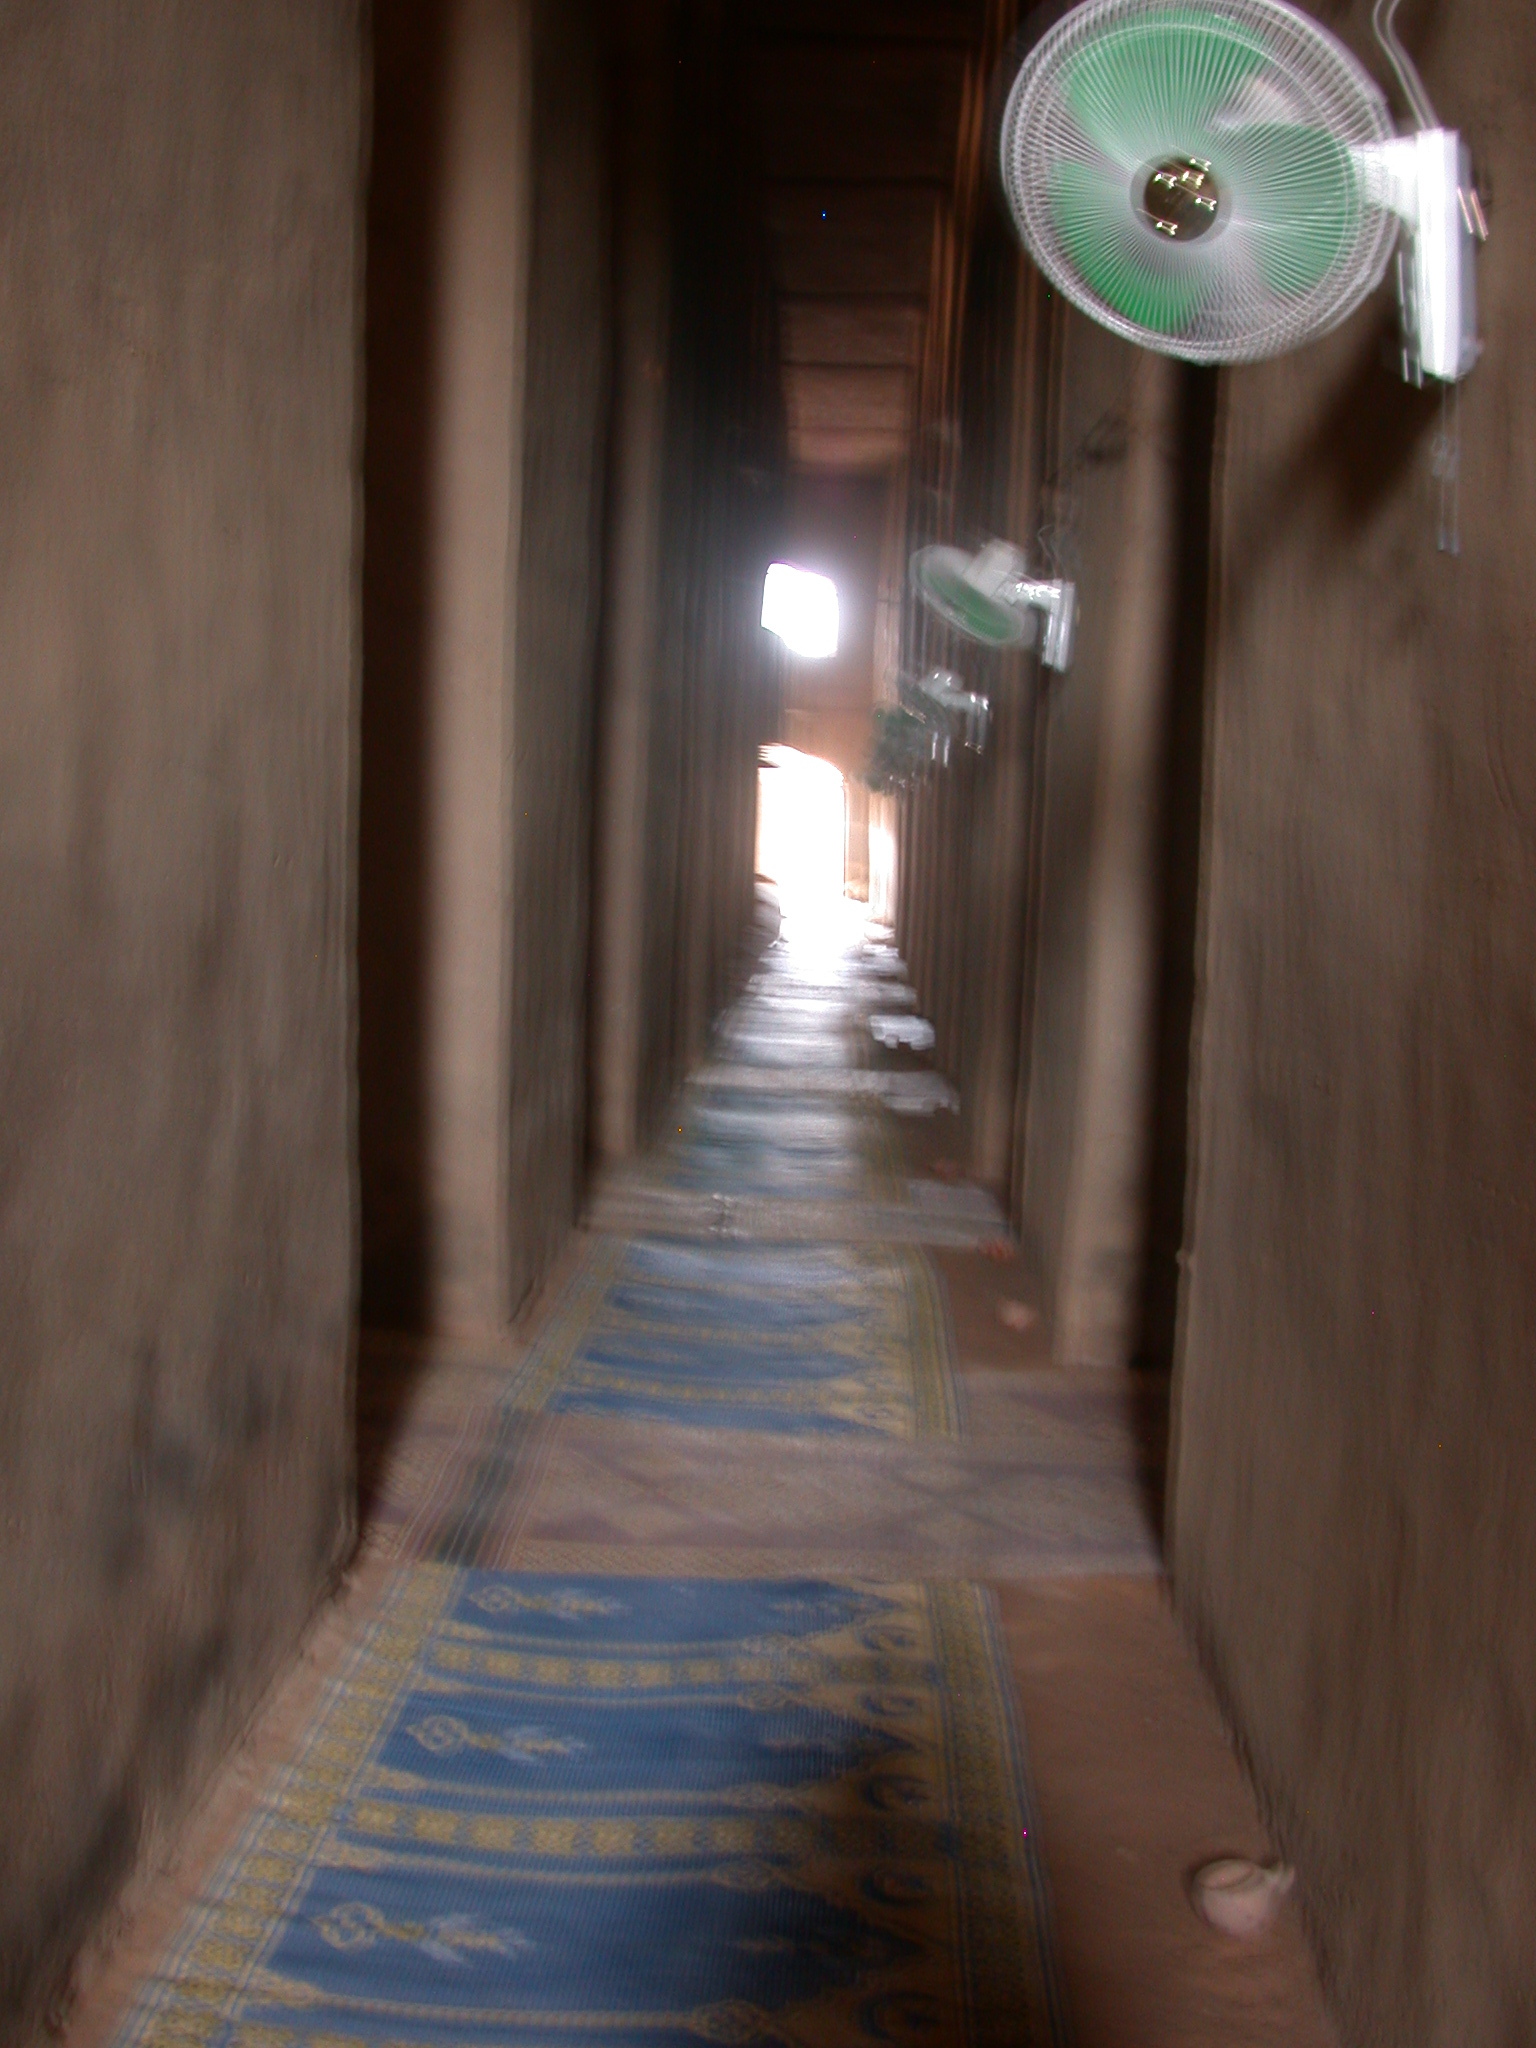 Interior Corridor of Mosque in Jenne, Mali